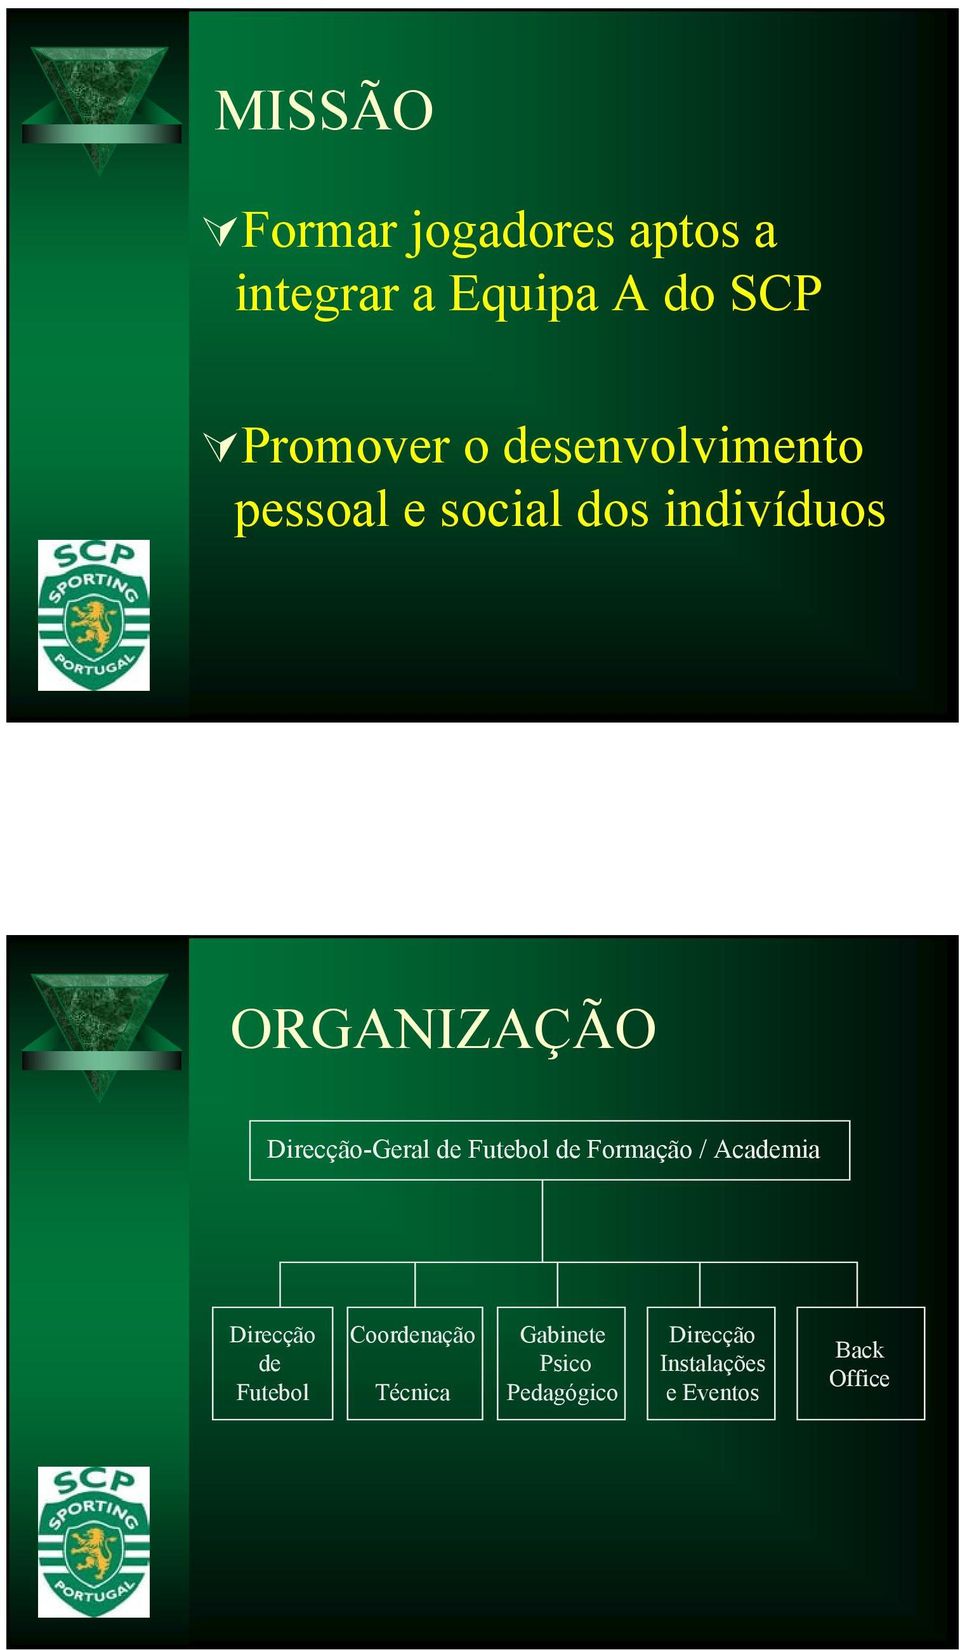 Direcção-Geral de Futebol de Formação / Academia Direcção de Futebol